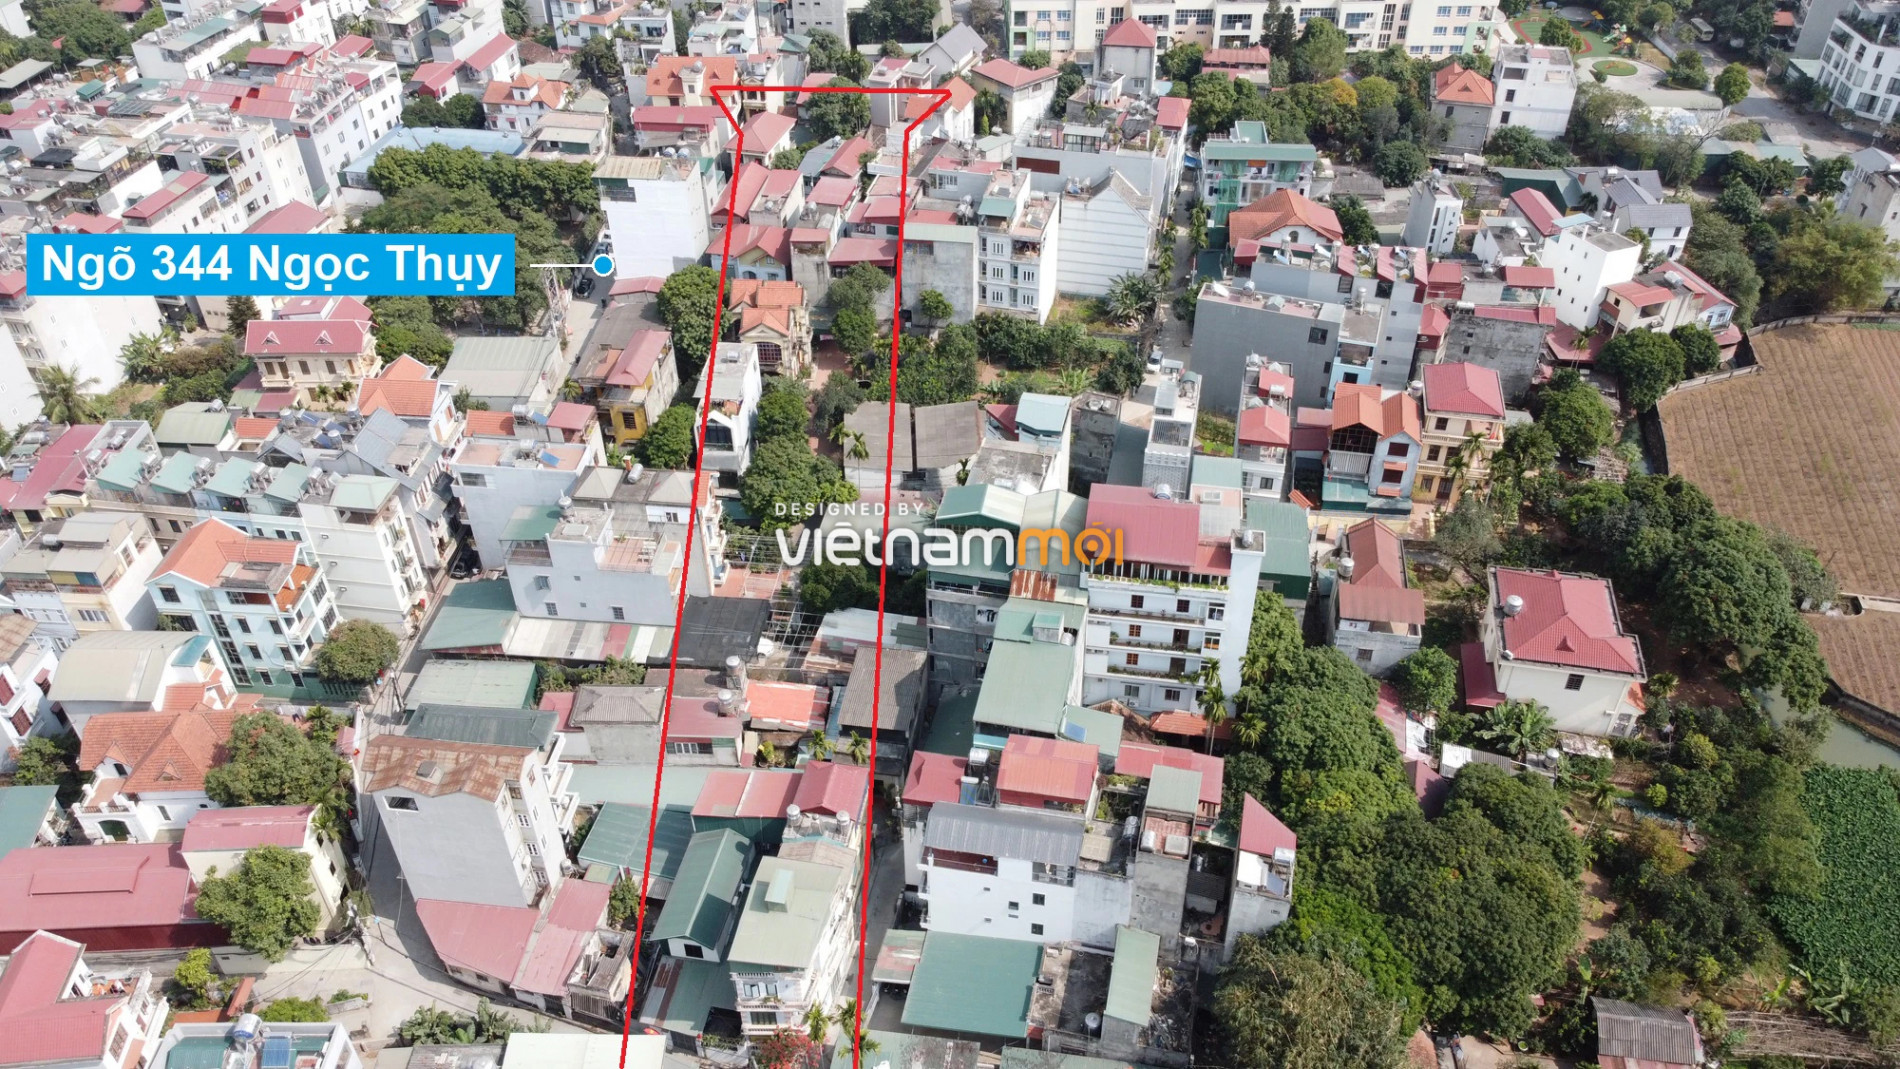 Những khu đất sắp thu hồi để mở đường ở phường Ngọc Thụy, Long Biên, Hà Nội (phần 3) - Ảnh 5.